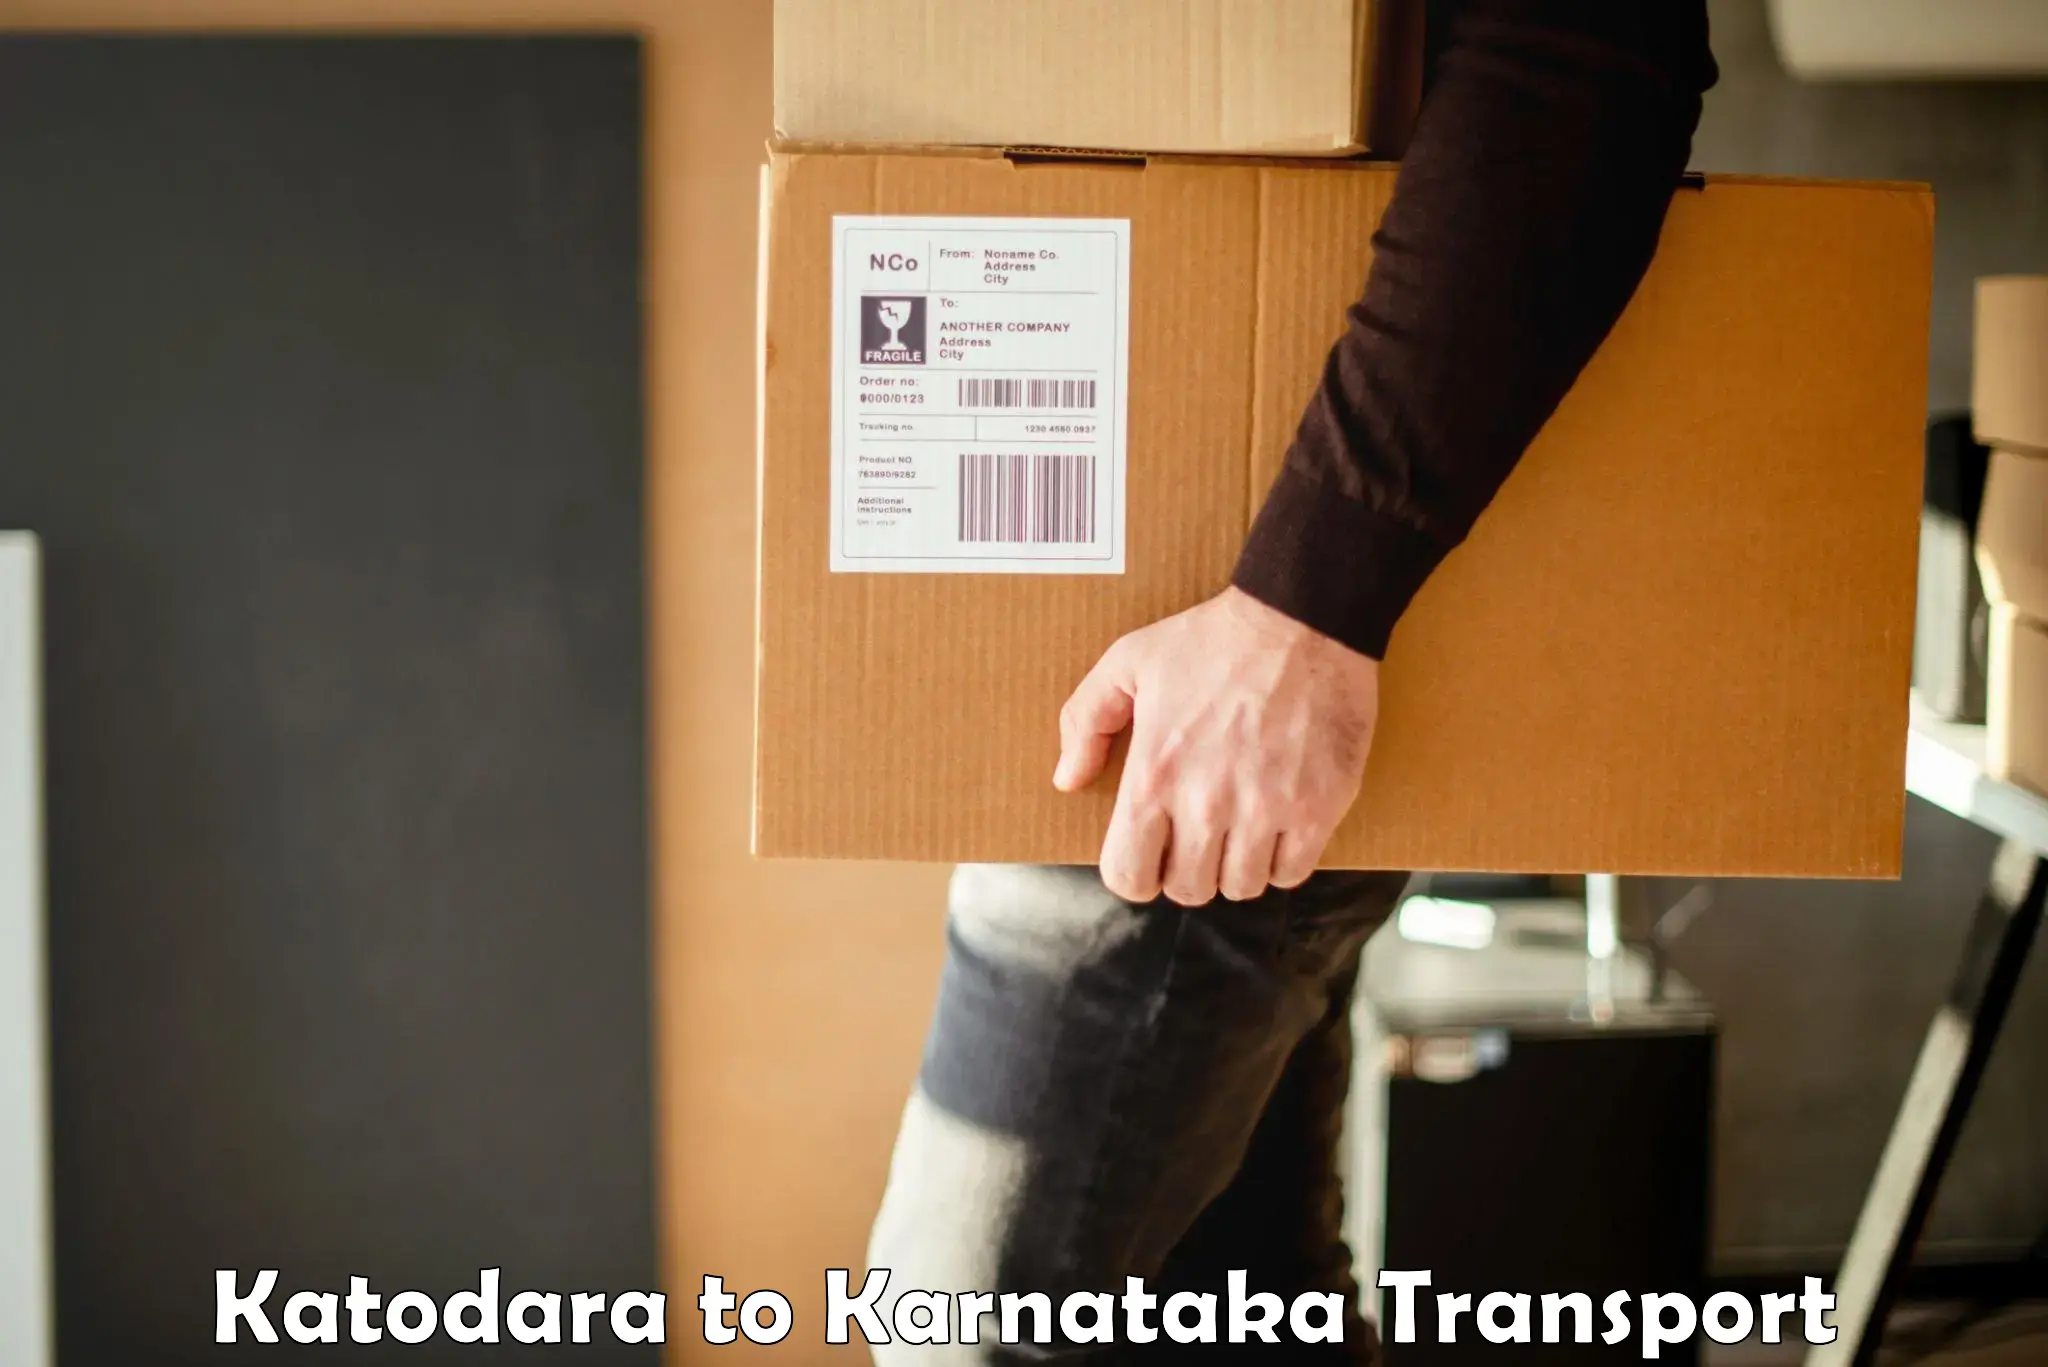 Transport in sharing in Katodara to Basavakalyan